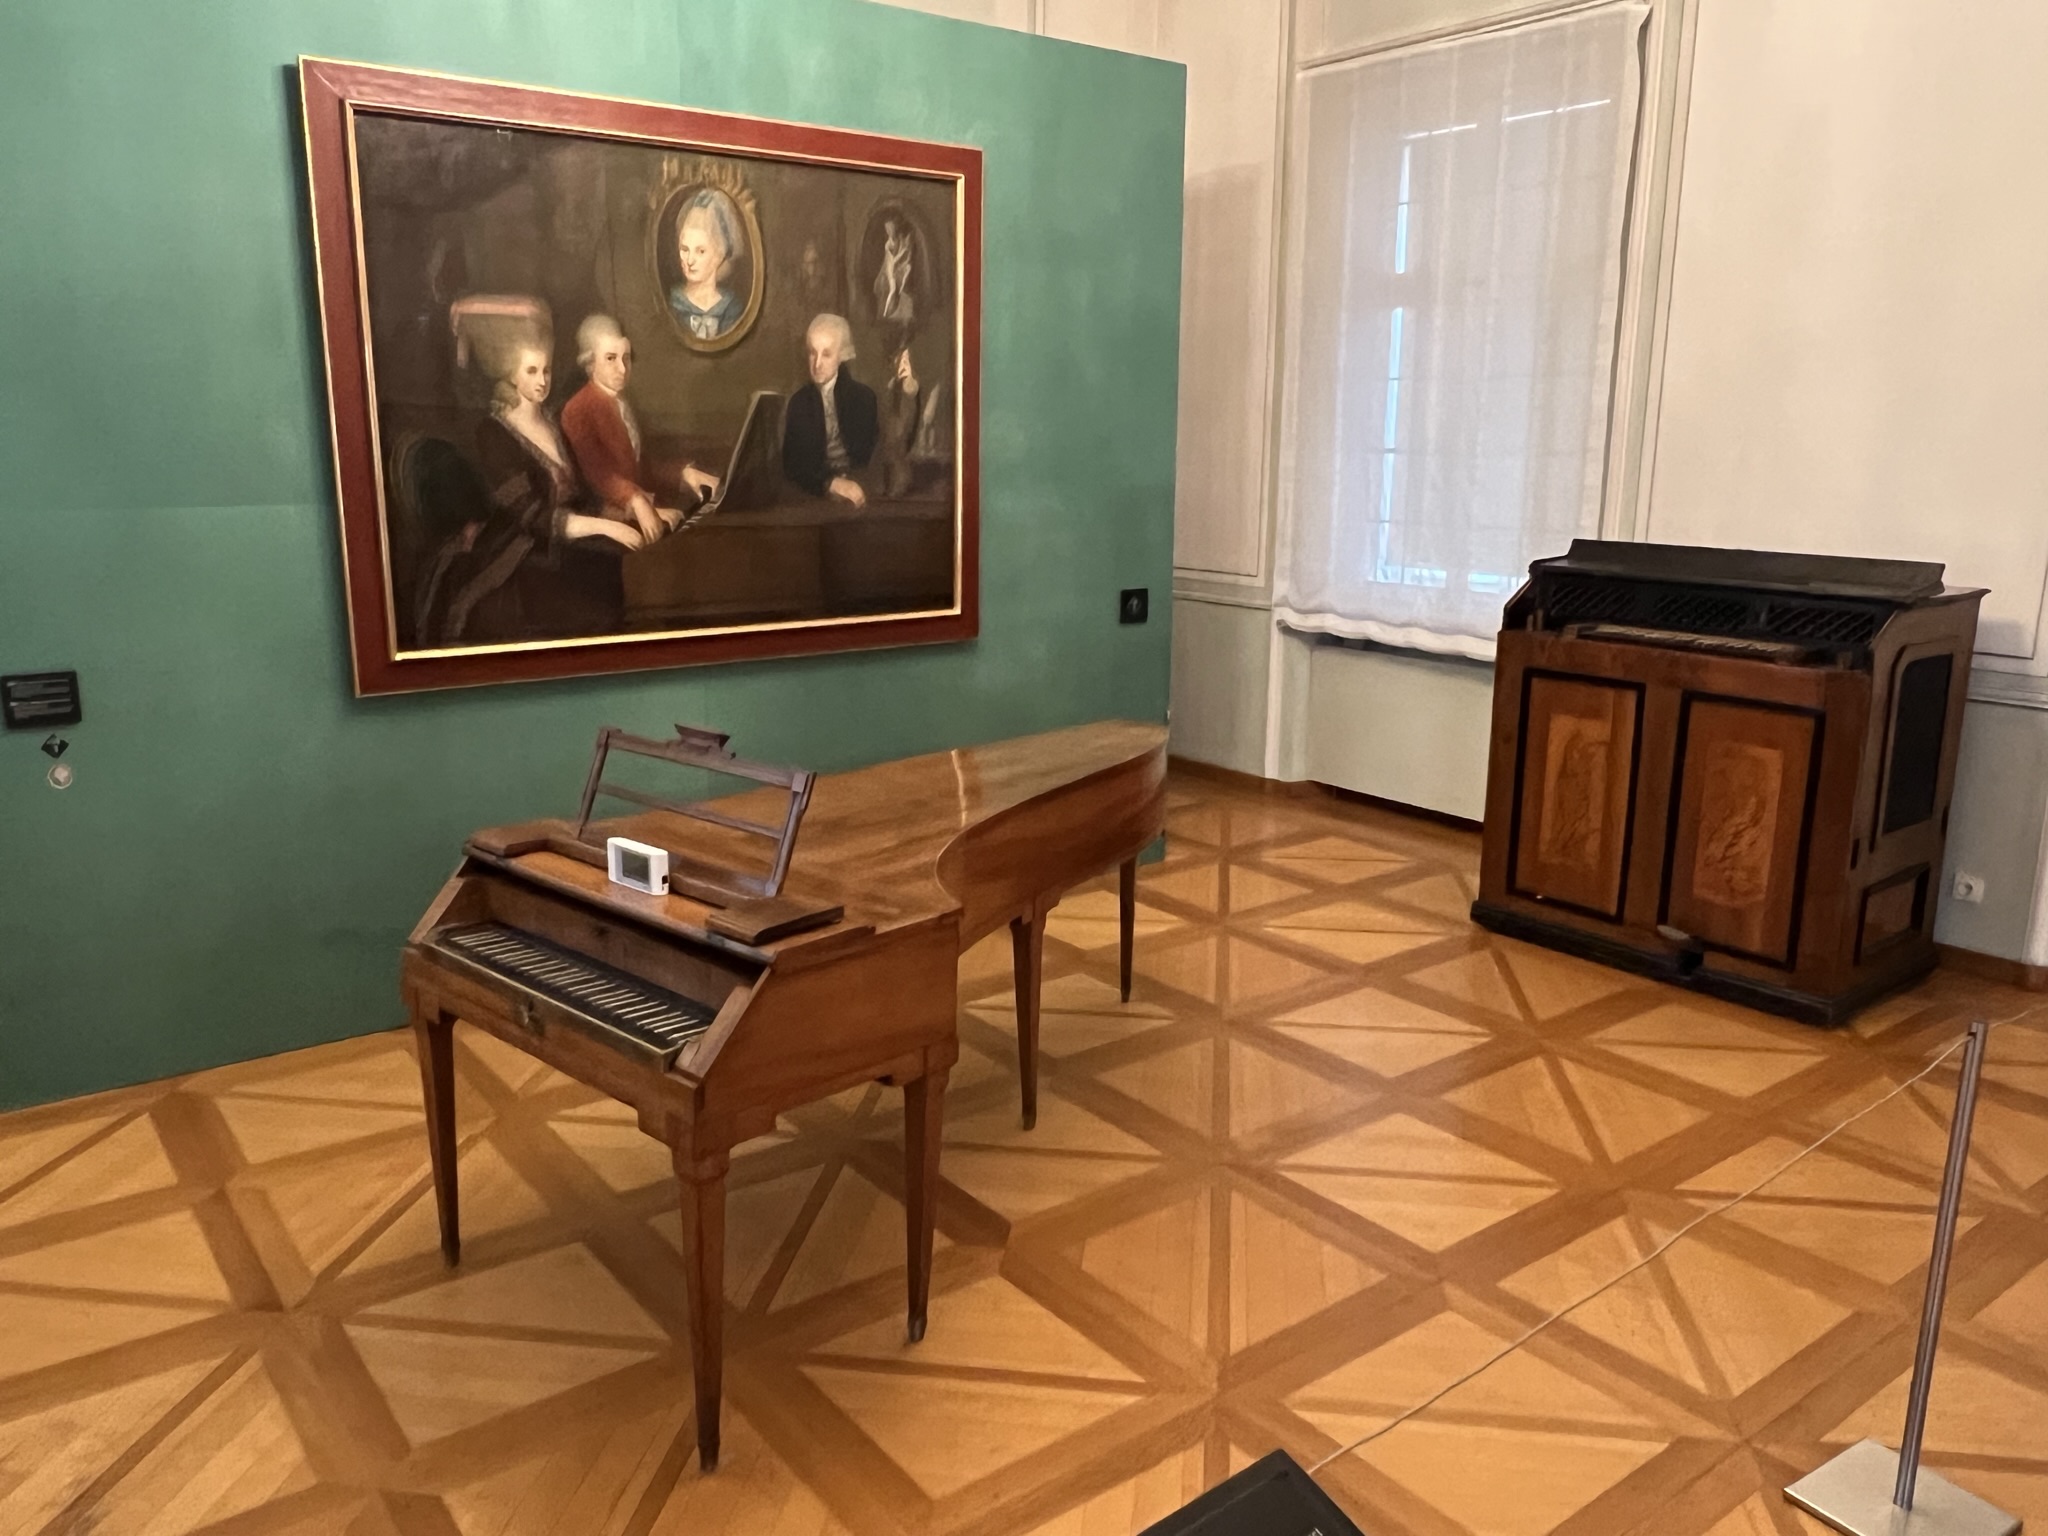 Mozart-Wohnhaus